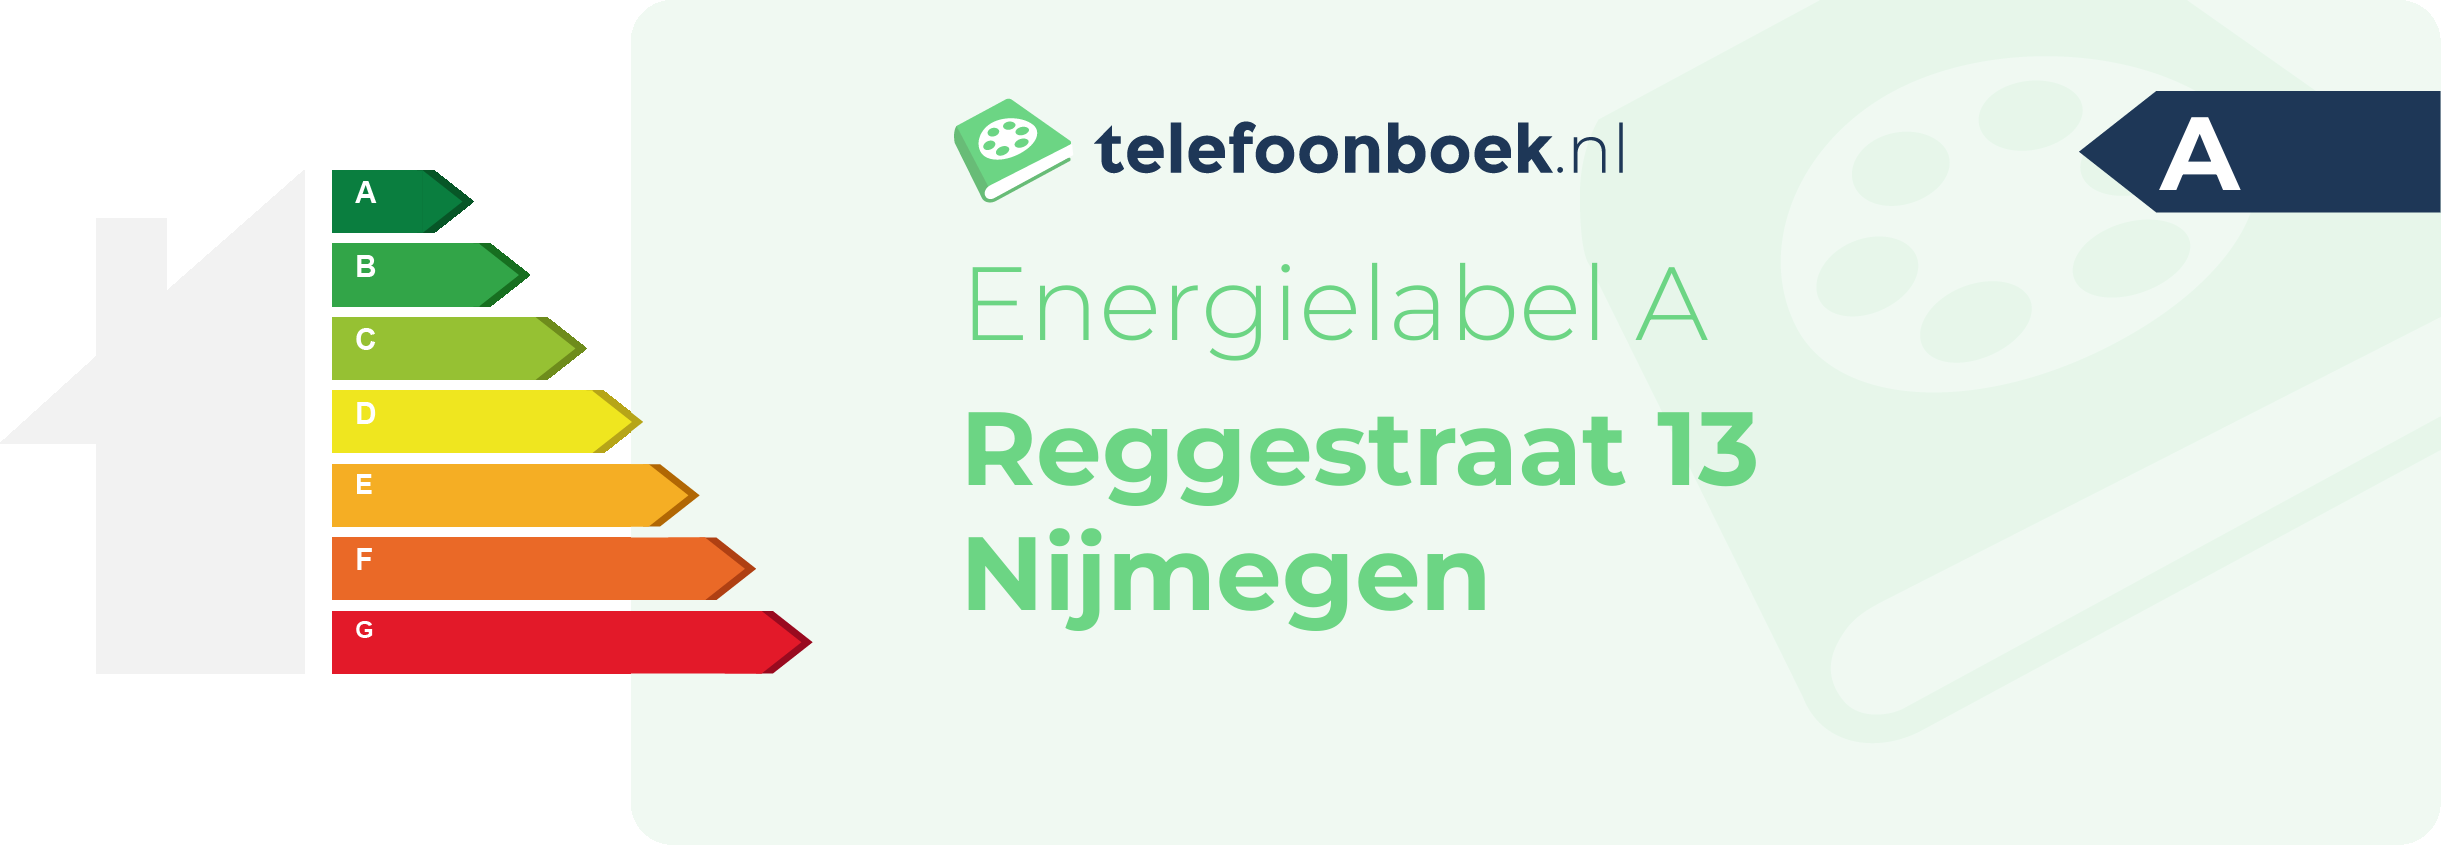 Energielabel Reggestraat 13 Nijmegen